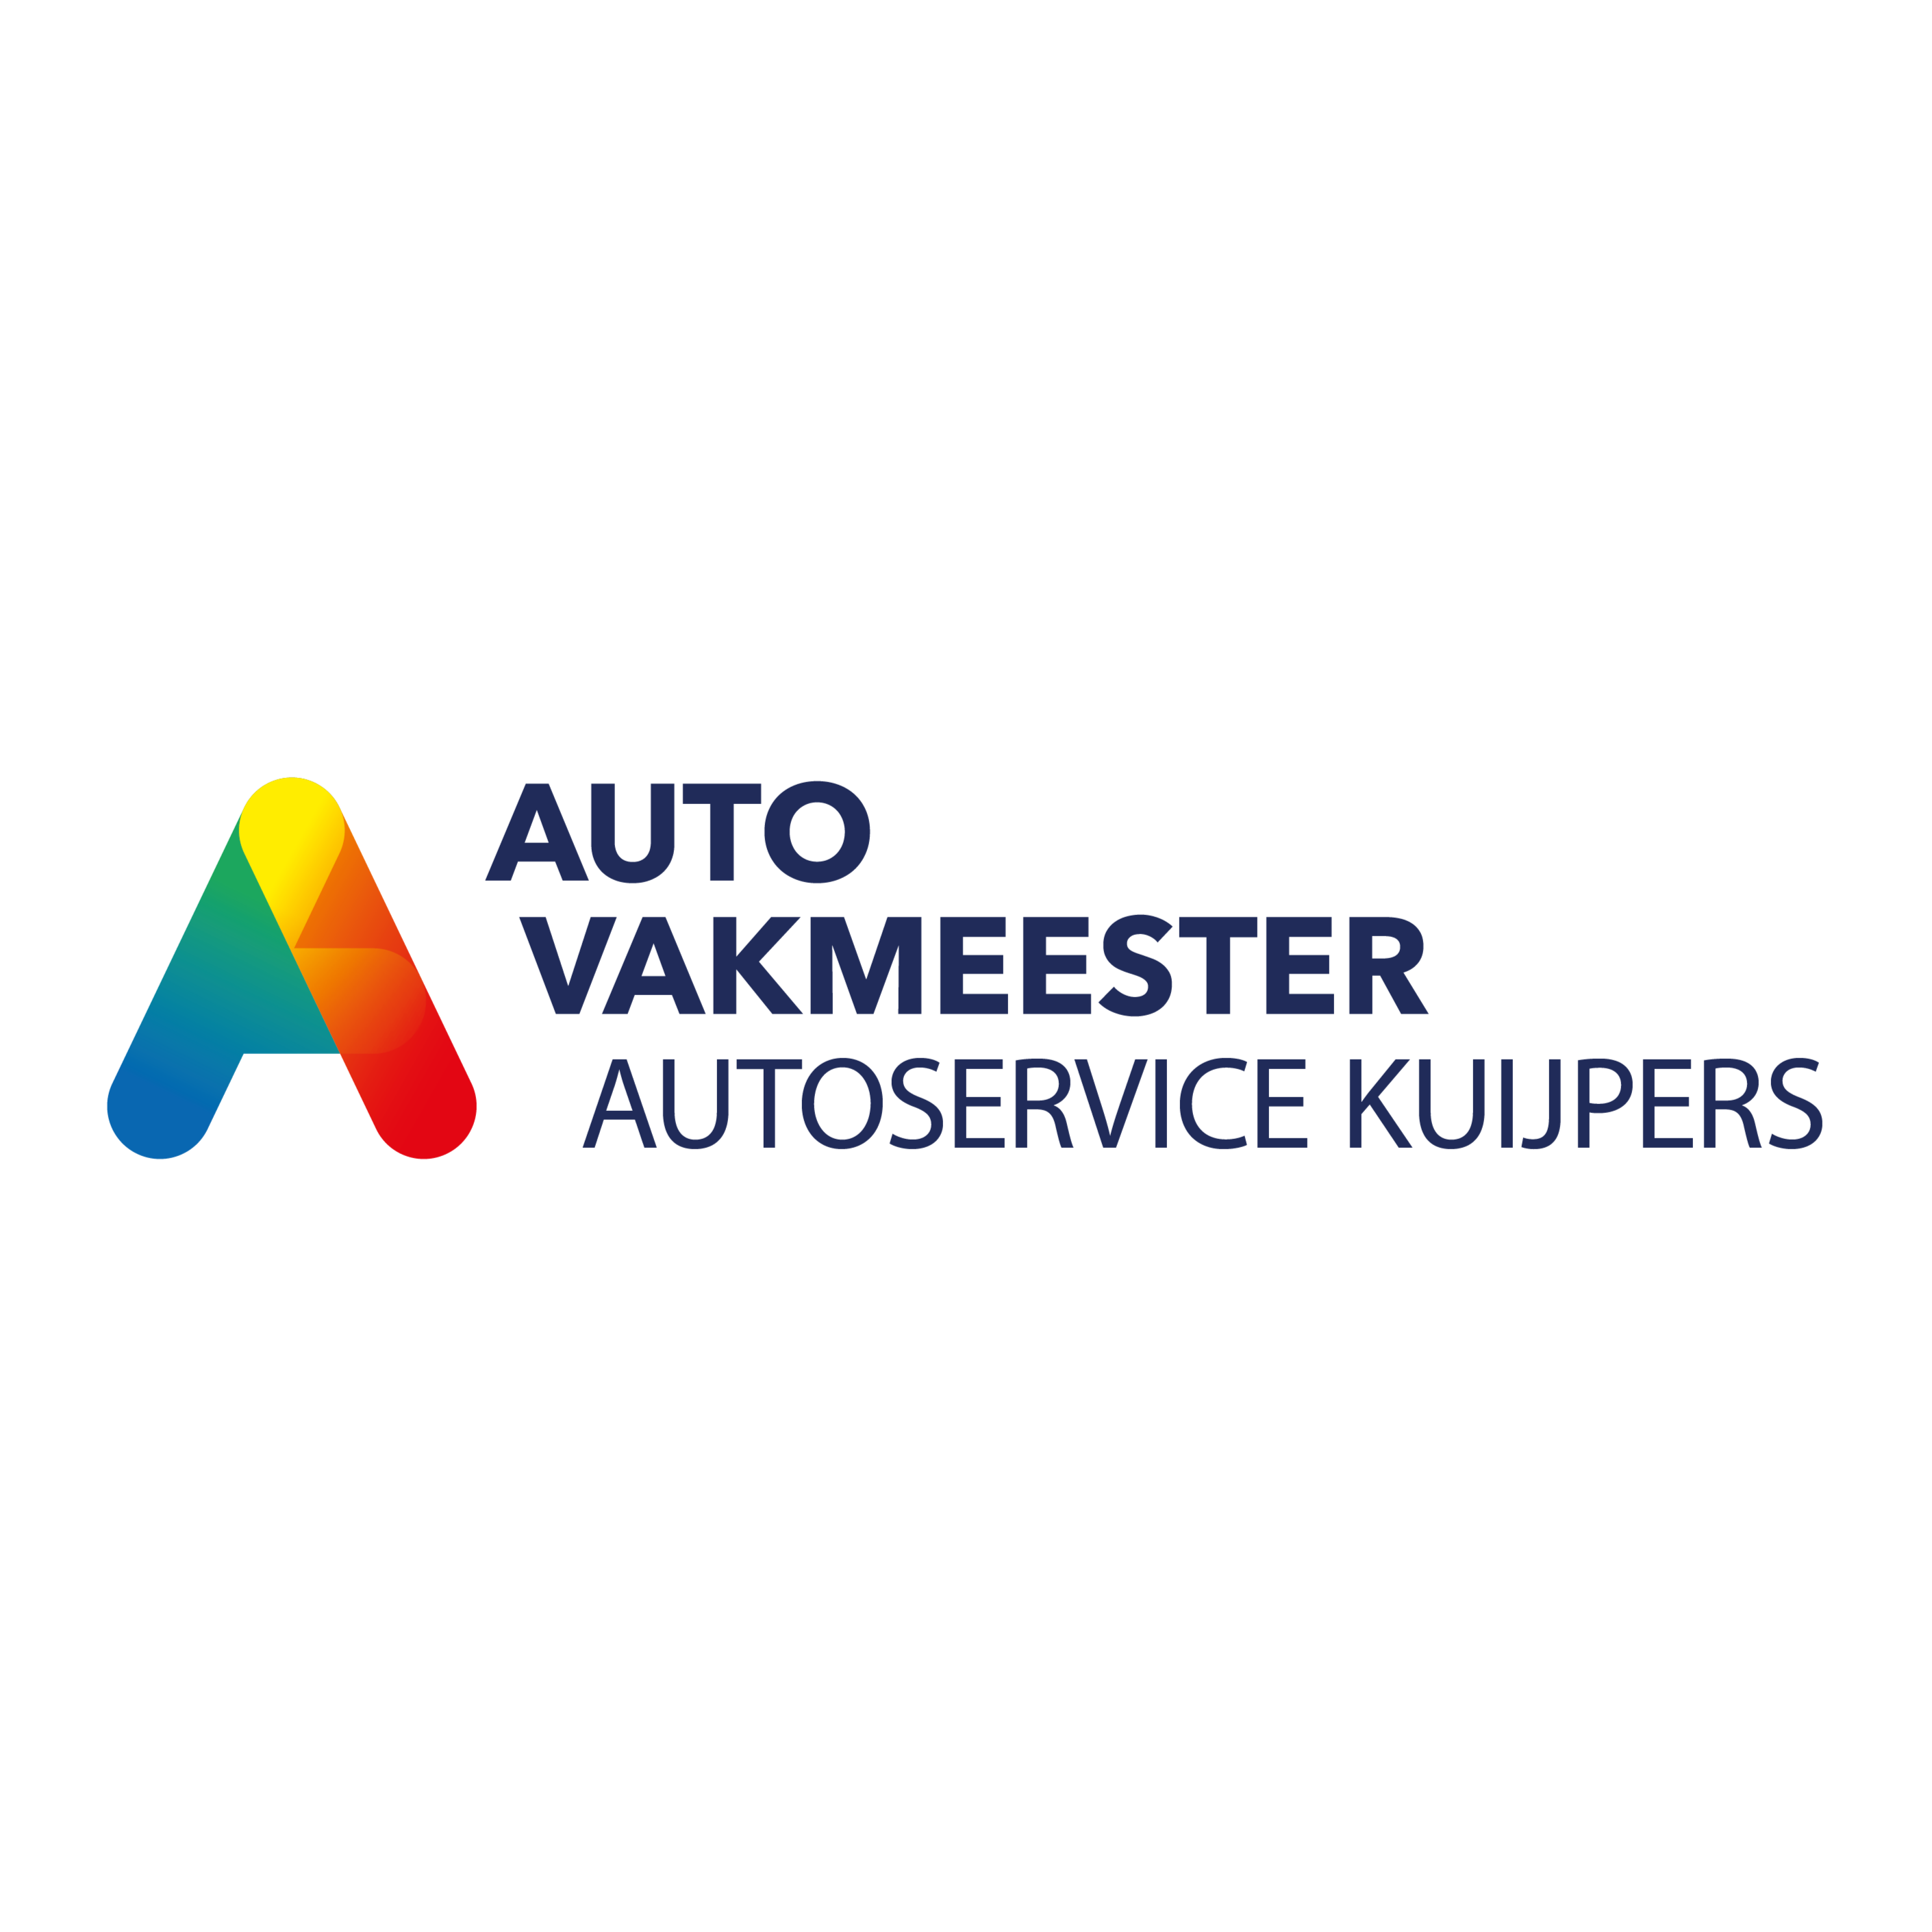 Autovakmeester Autoservice Kuijpers Nijmegen